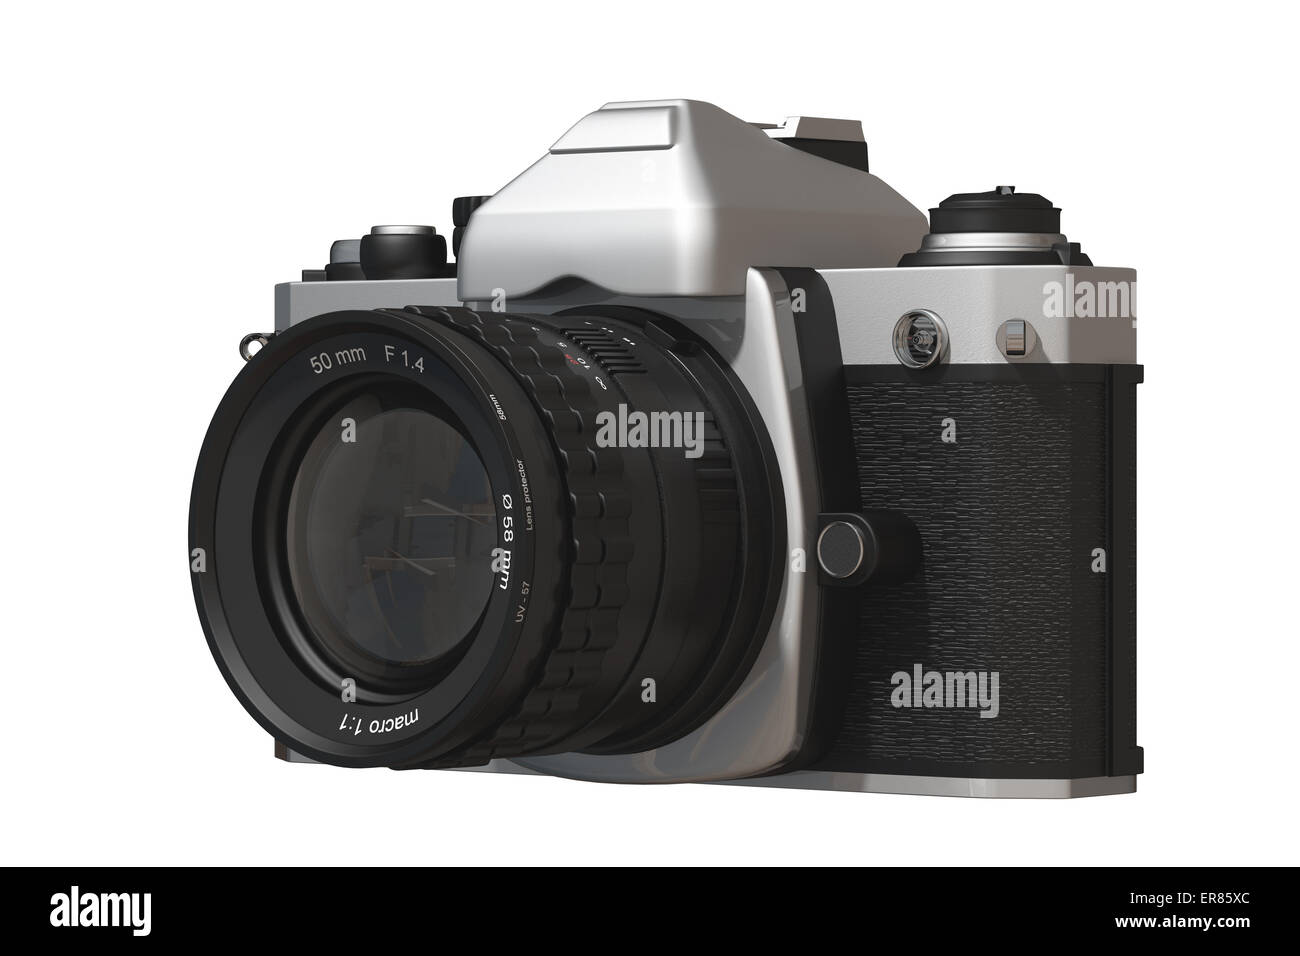 Representación 3D de una cámara analógica reflex Fotografía de stock - Alamy